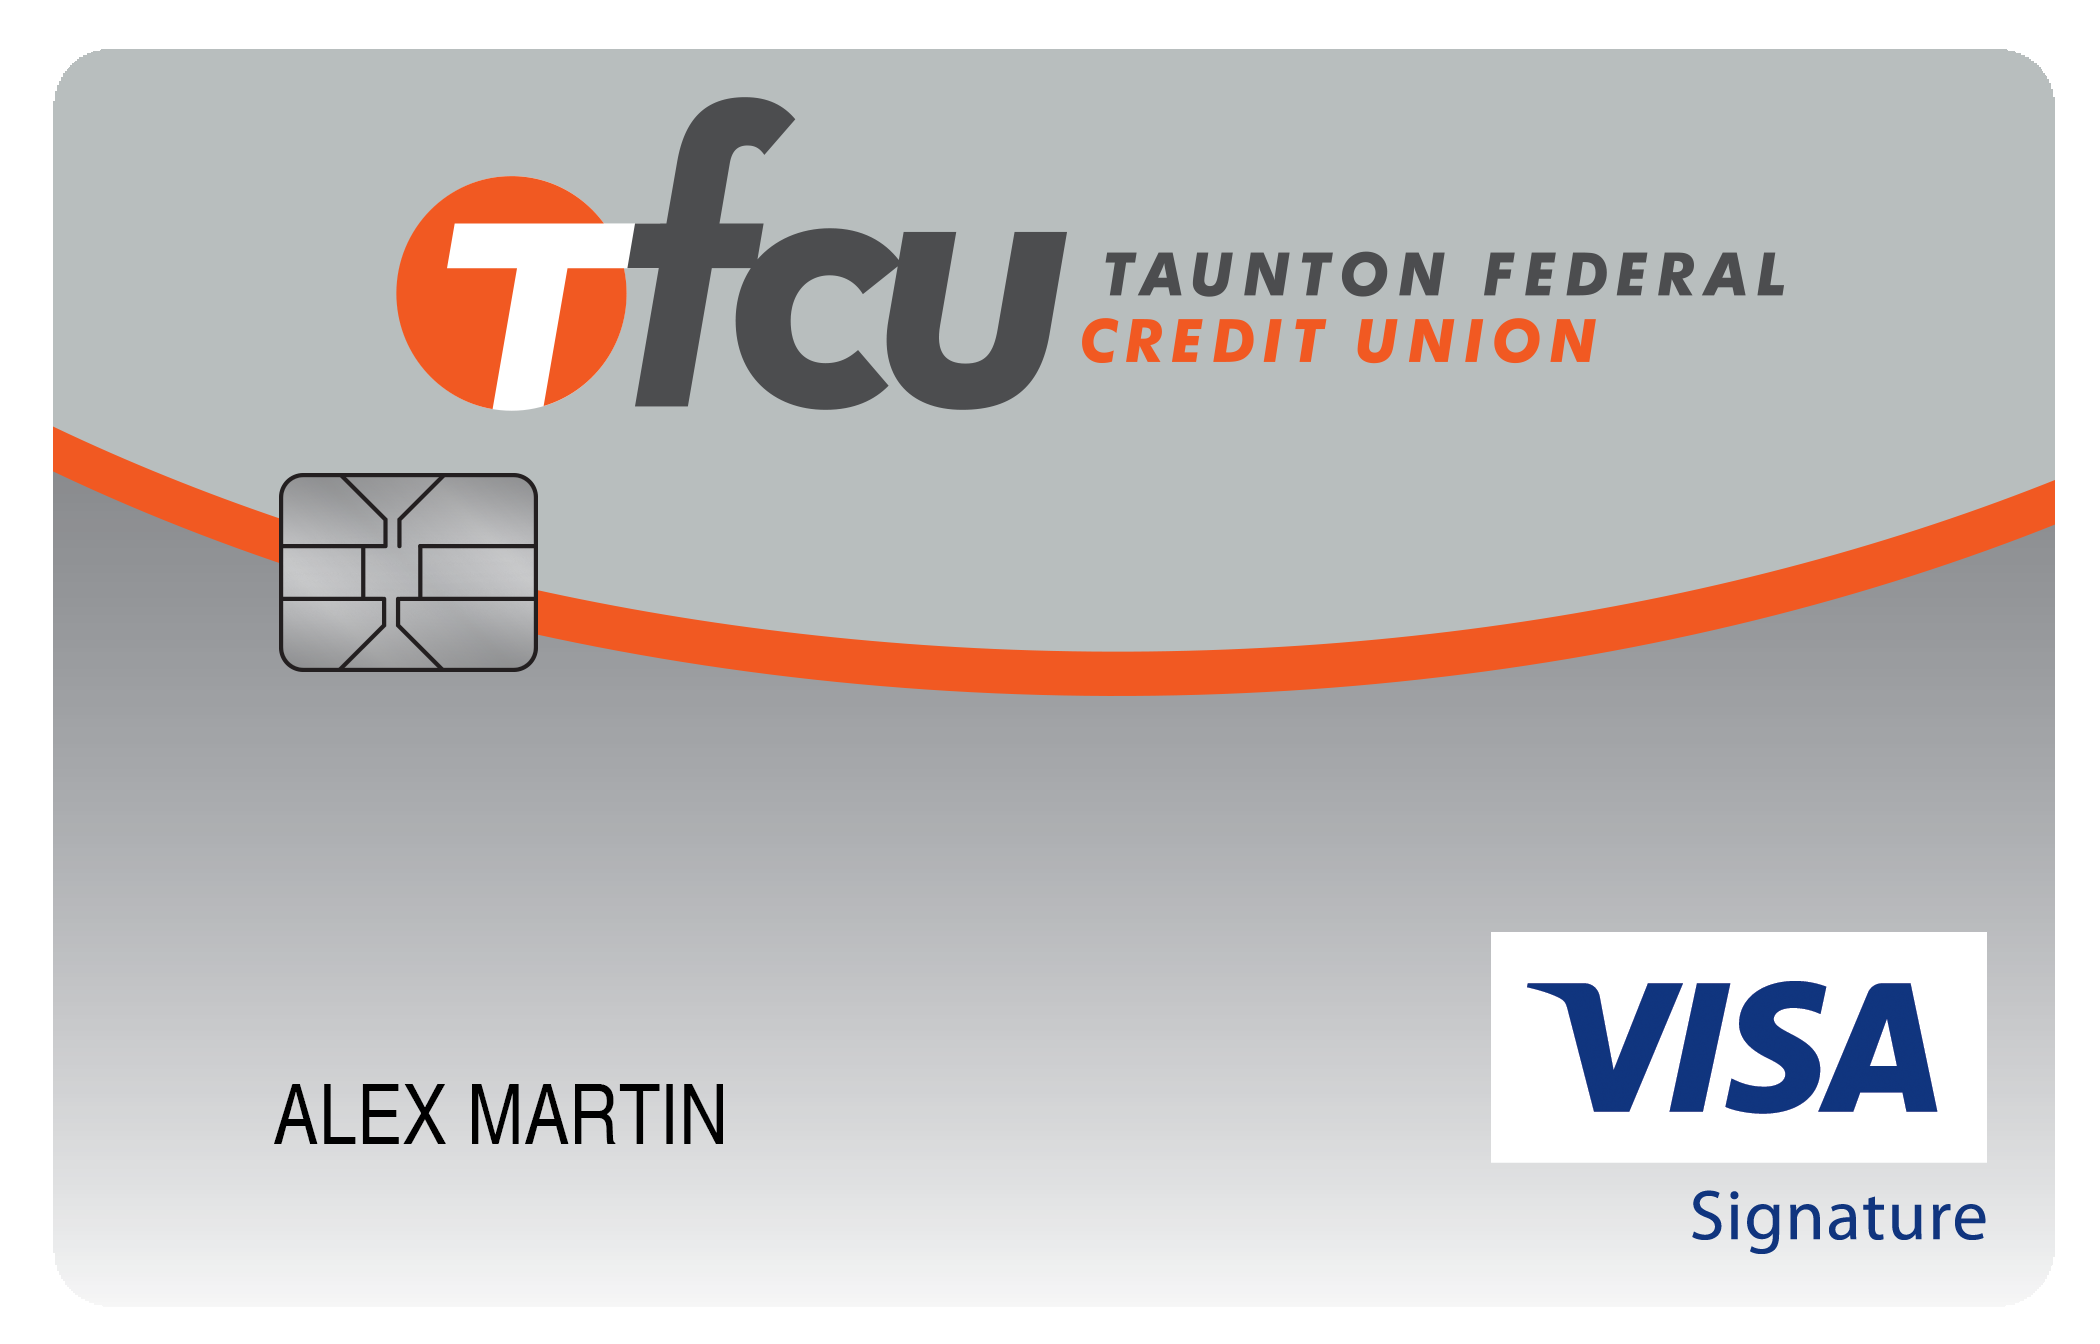 Taunton Federal Credit Union Travel Rewards+ Card